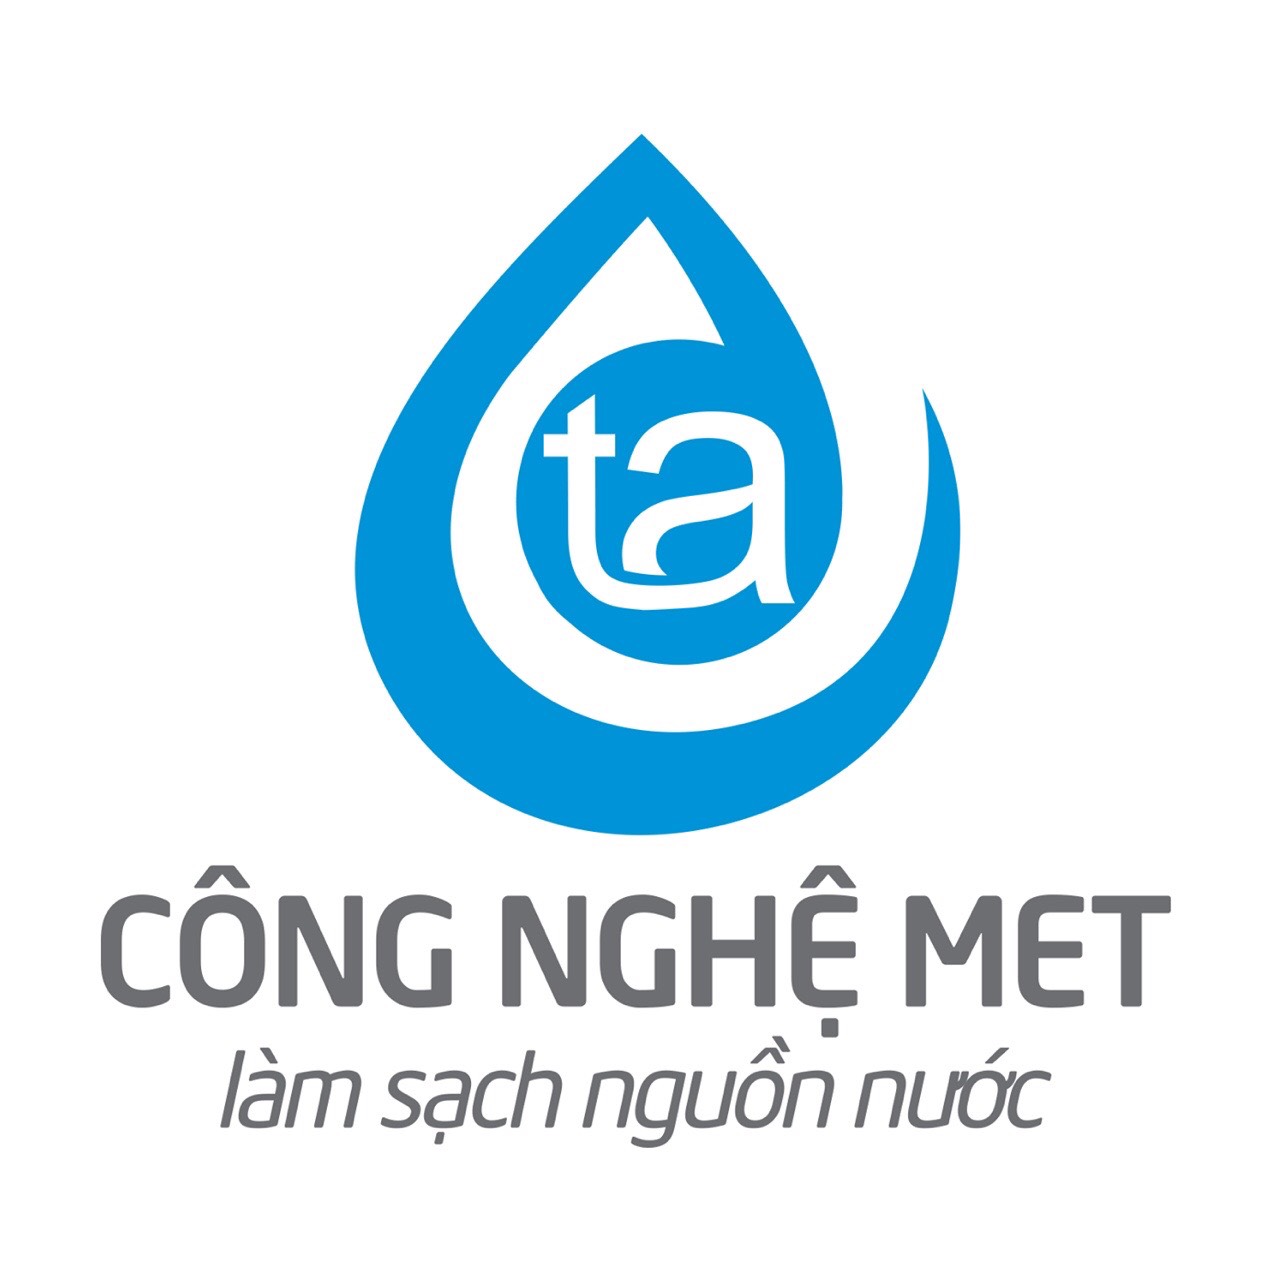 Công nghệ xử lý nước hiện đại hàng đầu Việt Nam 